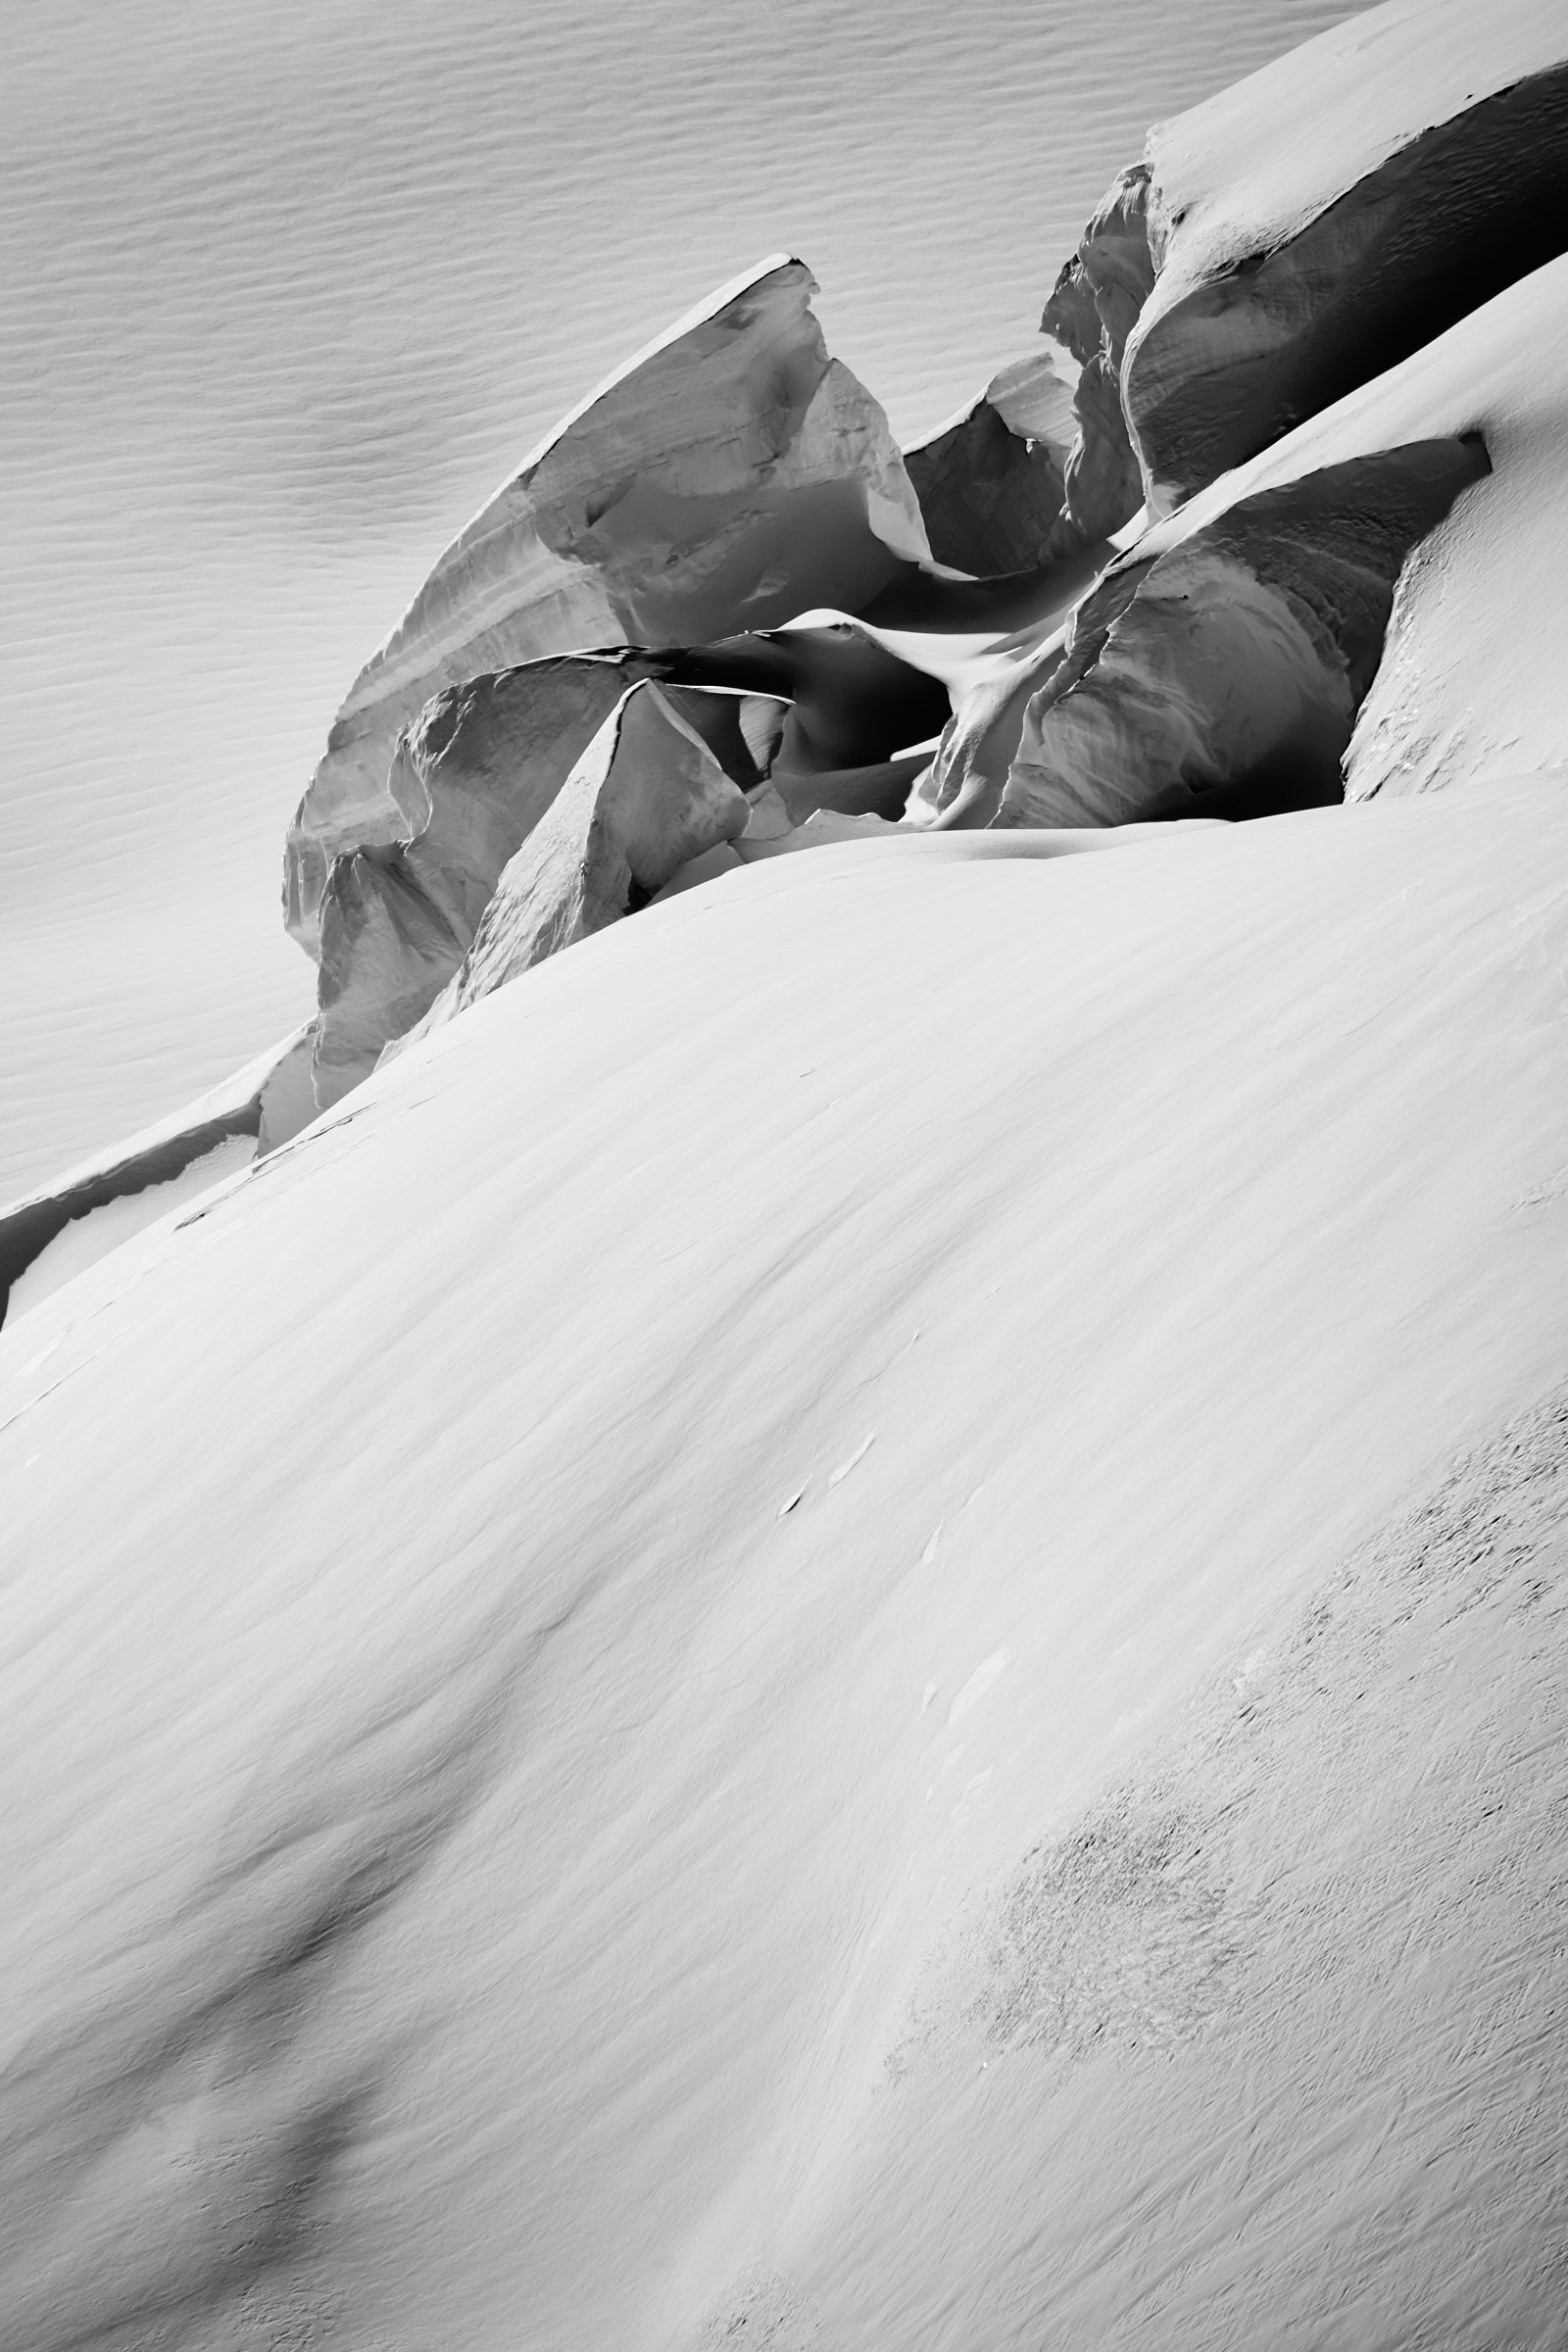 Aletschgletscher-Eisskulpturen, fotografiert vom Schweizer Fine art Fotografen Jürg Kaufmann während der zahlreichen Expeditionen auf den Gletschern in den Schweizer Alpen.